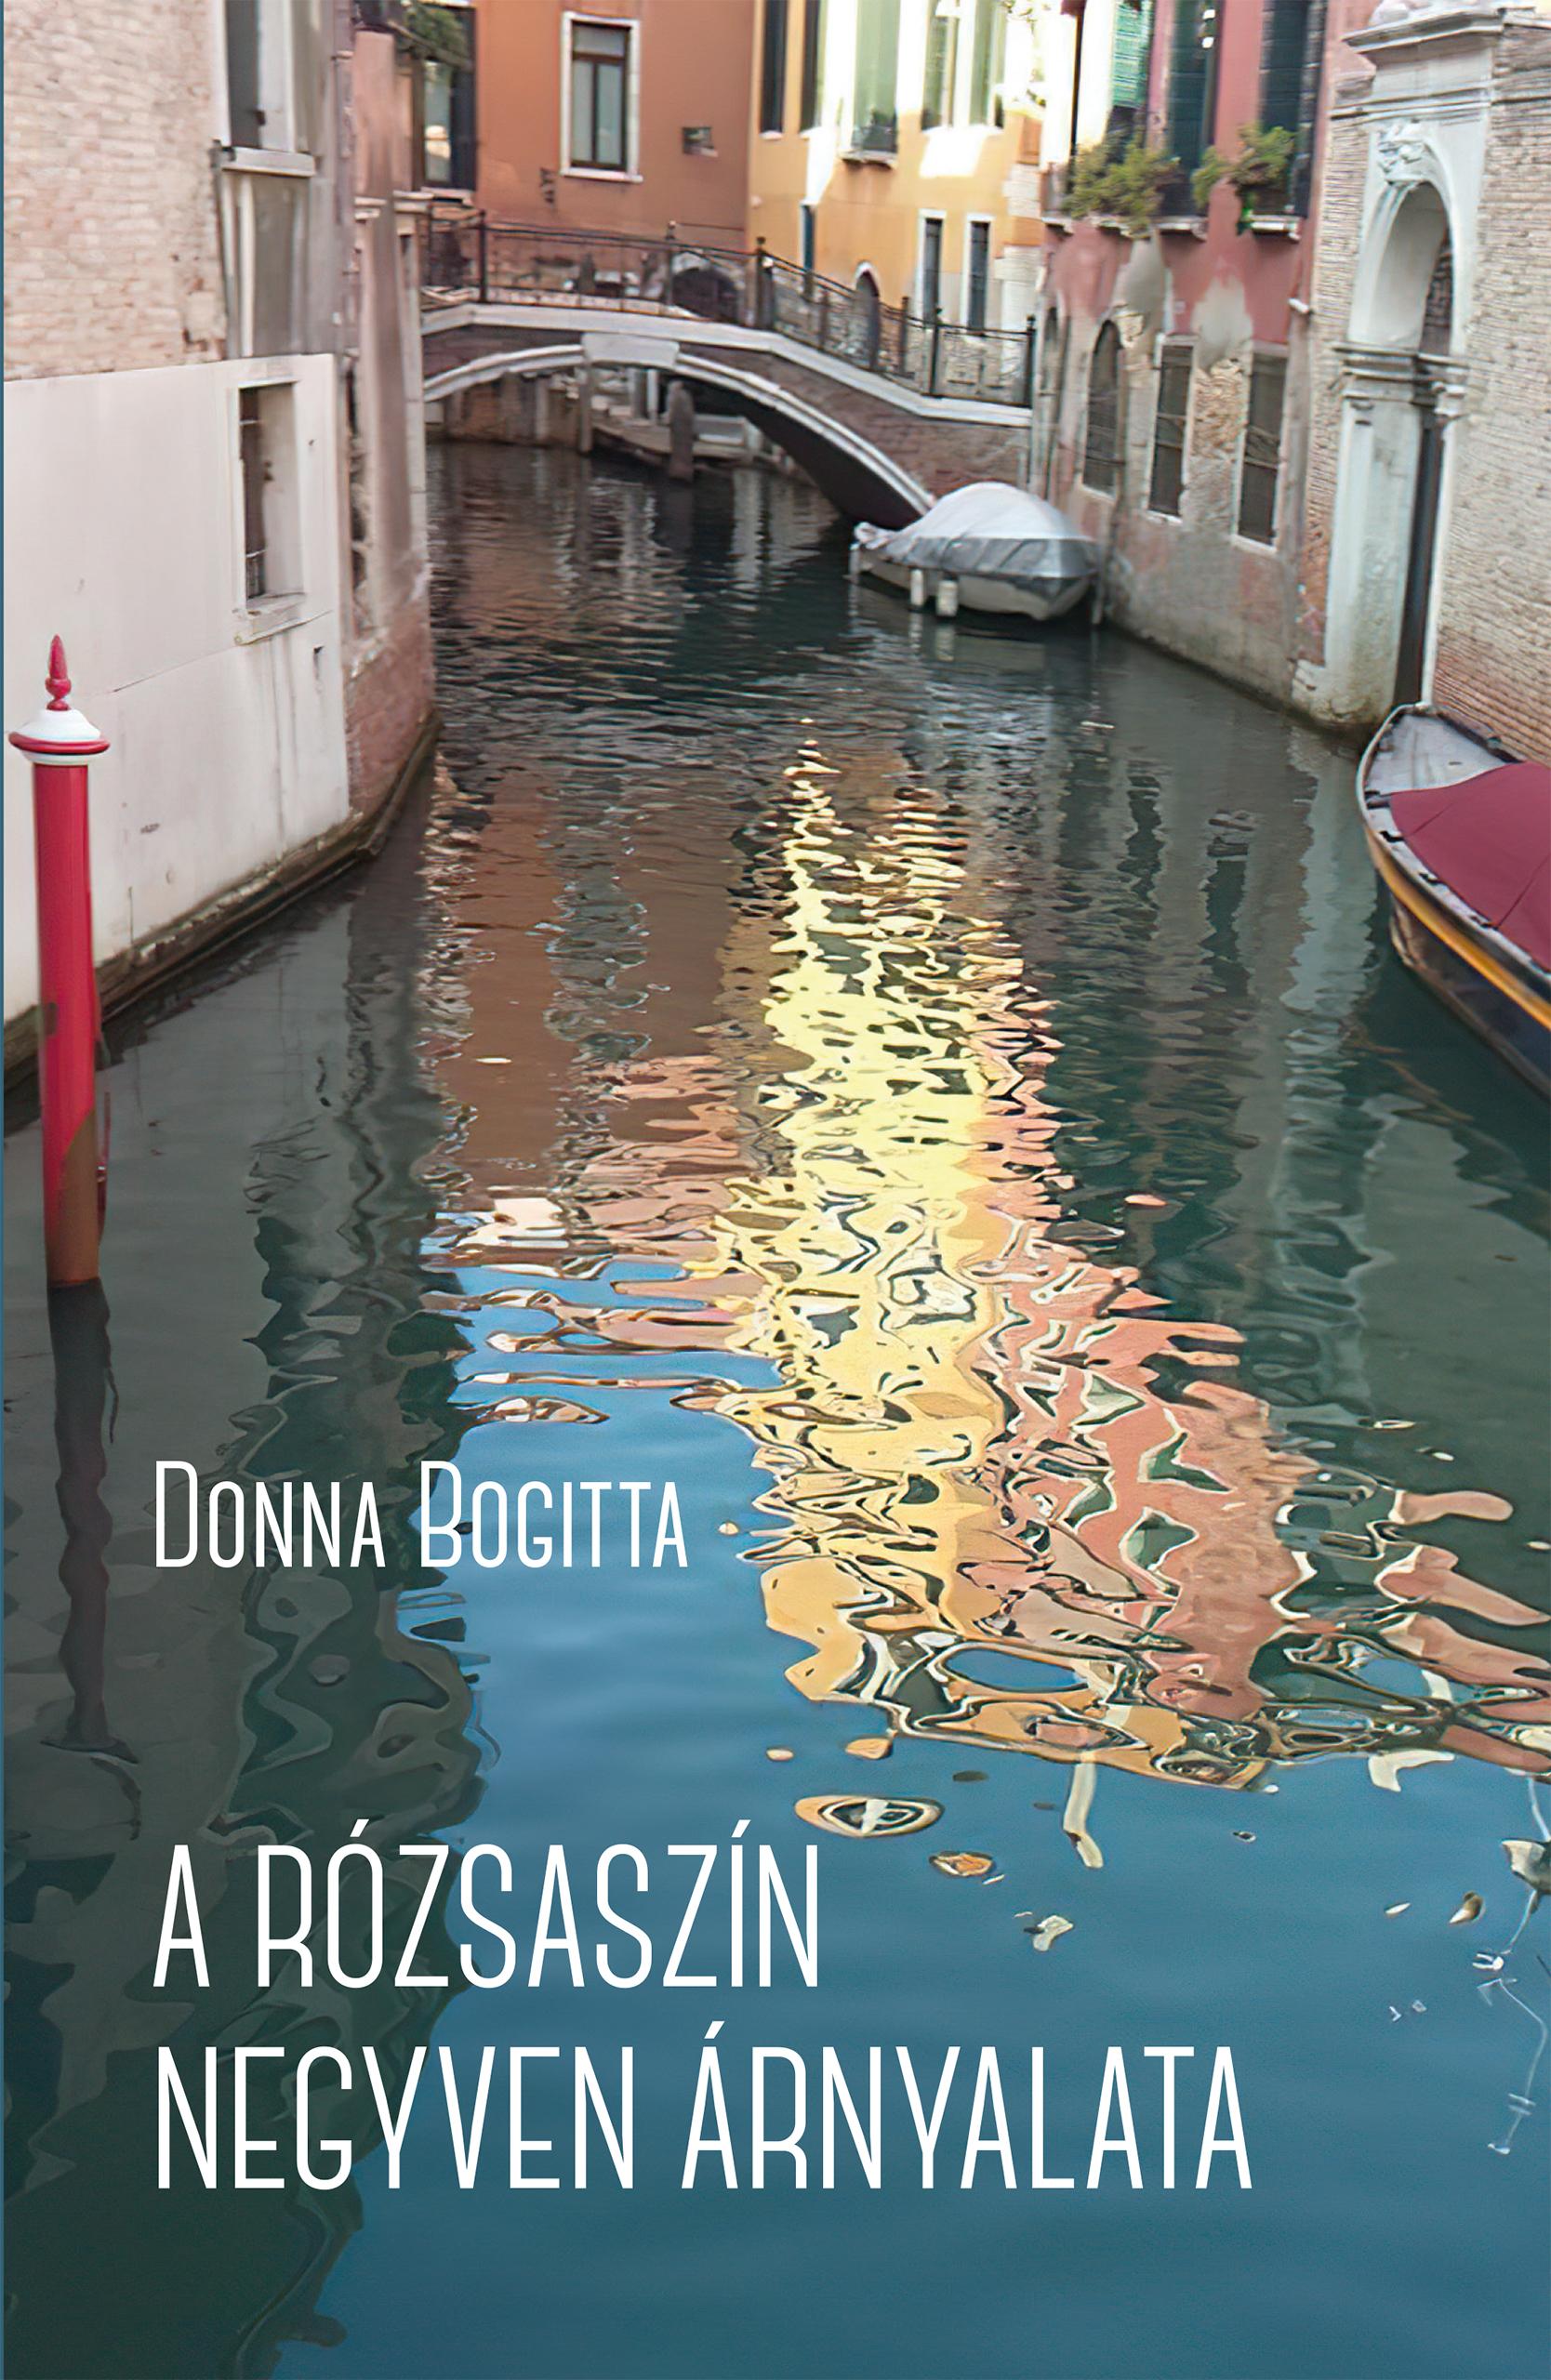 Donna Bogitta - A rózsaszín negyven árnyalata. Királynői életek, elgurult koronák